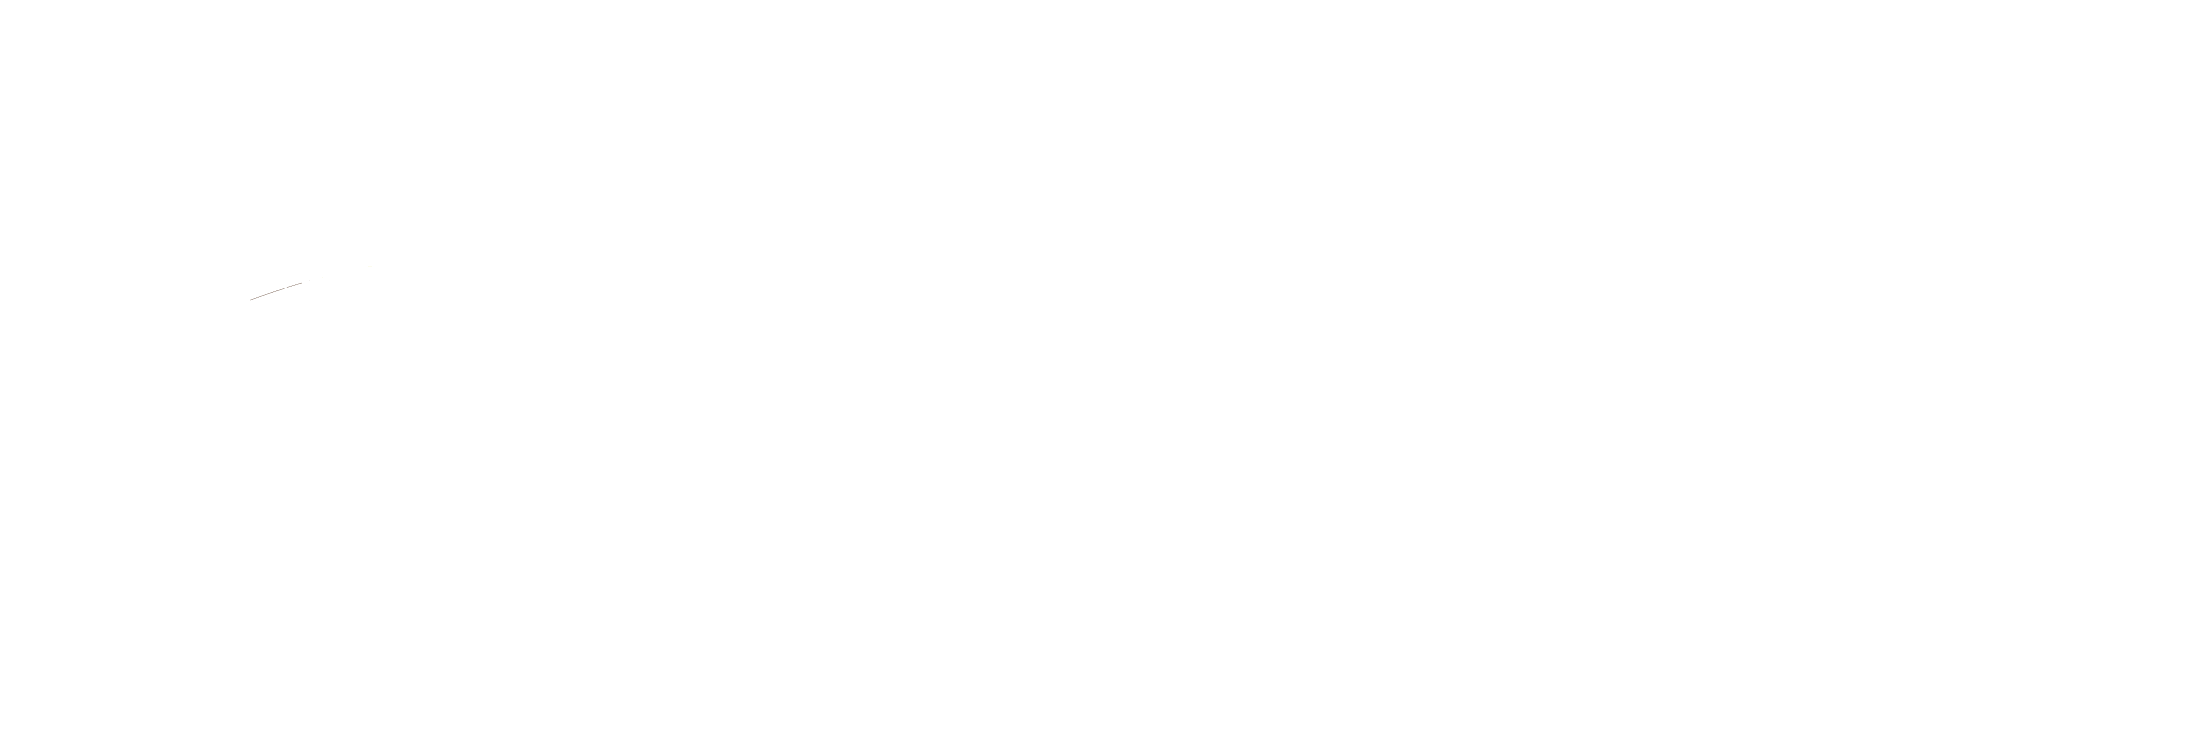 Osebos_logo_2019_fc_wit